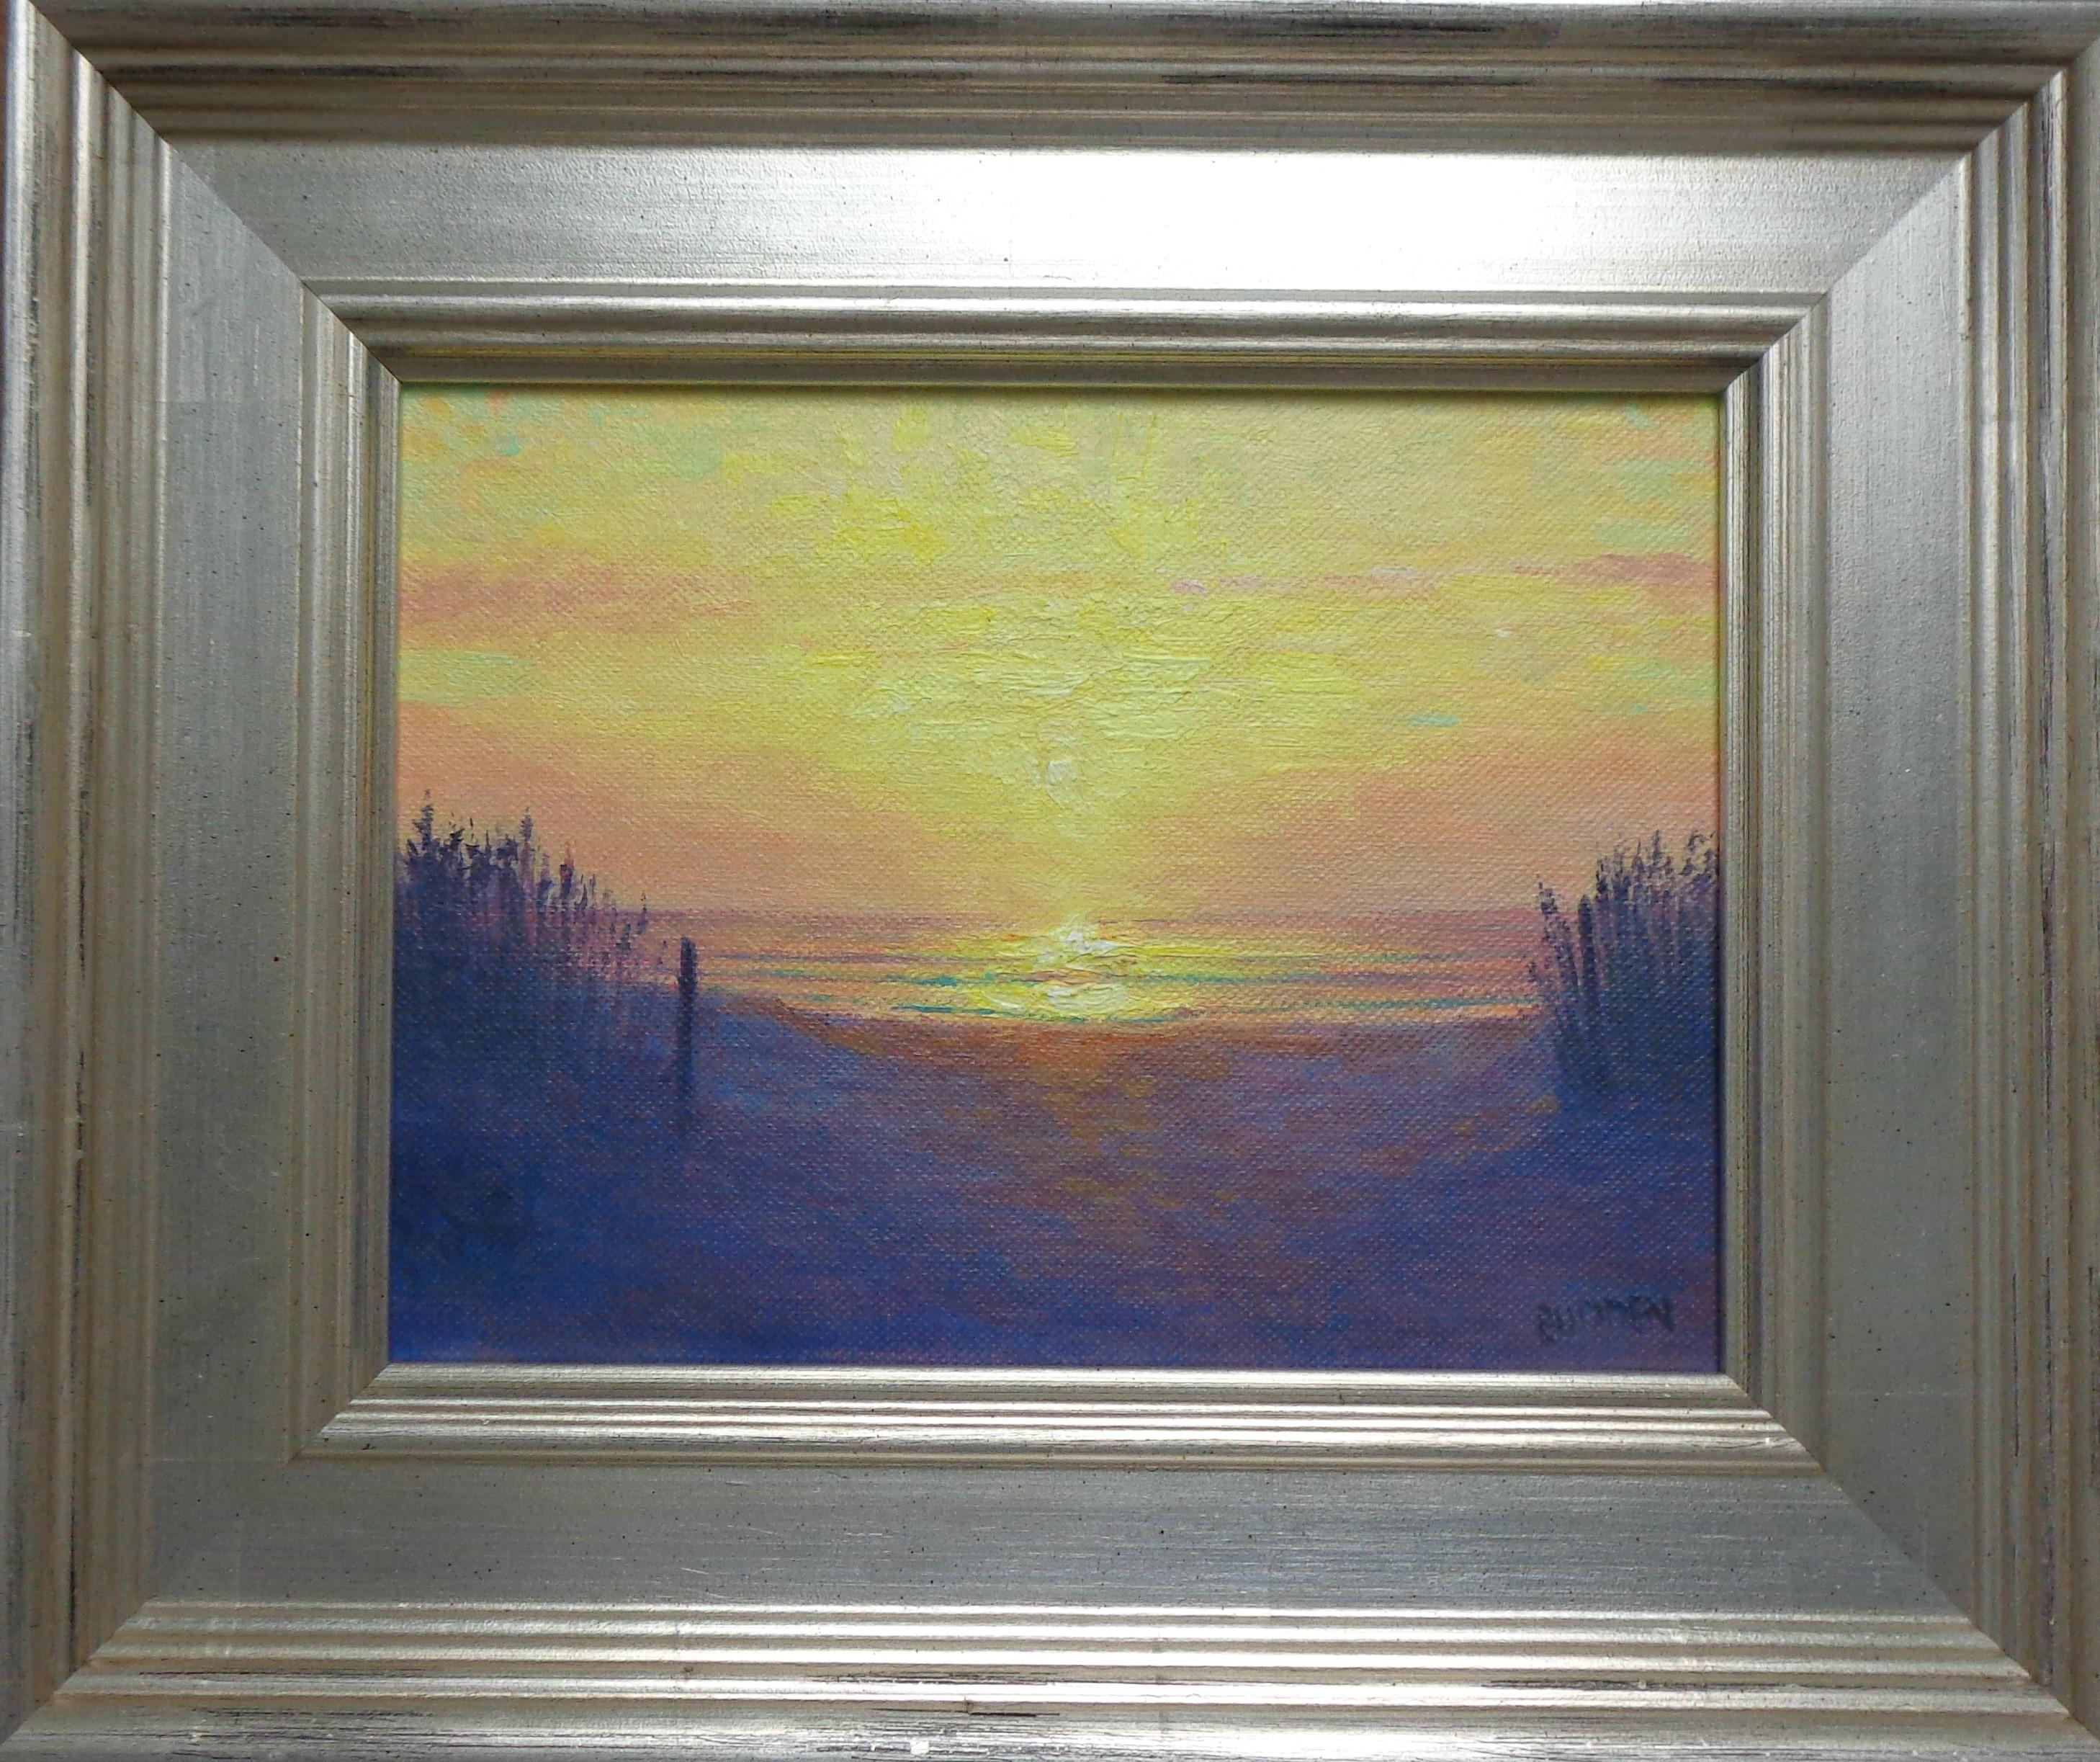 Couleurs du soleil levant
huile/panneau
Une peinture à l'huile sur toile de l'artiste contemporain primé Michael Budden qui présente un coucher de soleil spectaculaire et sensationnel créé dans un style réaliste impressionniste. L'image mesure 6 x 8